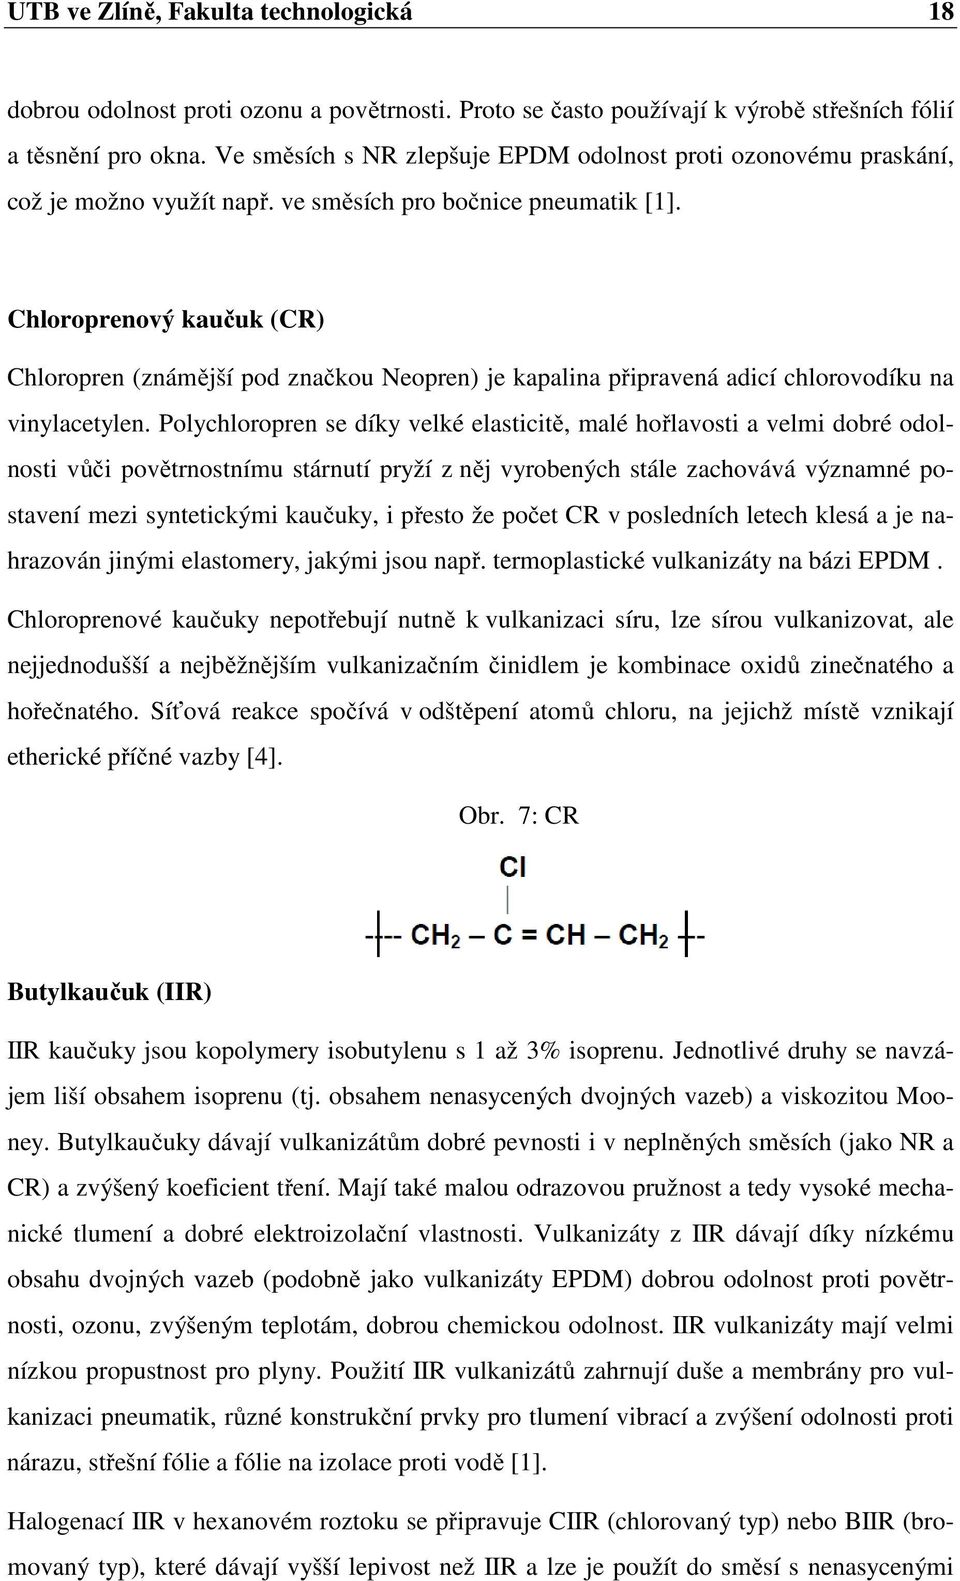 Chloroprenový kaučuk (CR) Chloropren (známější pod značkou Neopren) je kapalina připravená adicí chlorovodíku na vinylacetylen.